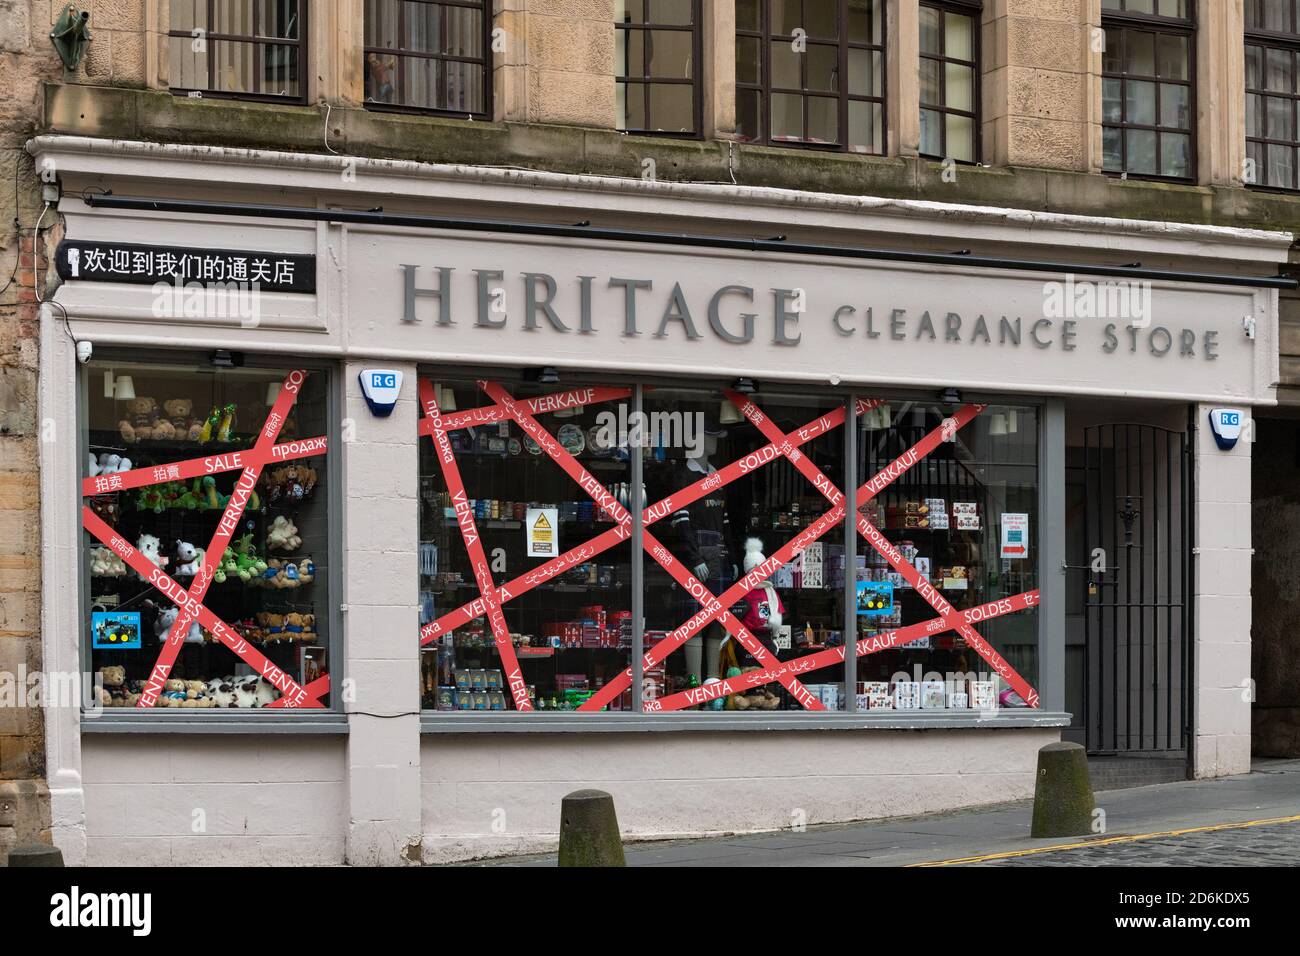 La vente signe dans différentes langues pendant la pandémie de coronavirus - Heritage Clearance Store, Edinburgh Royal Mile, Édimbourg, Écosse, Royaume-Uni Banque D'Images